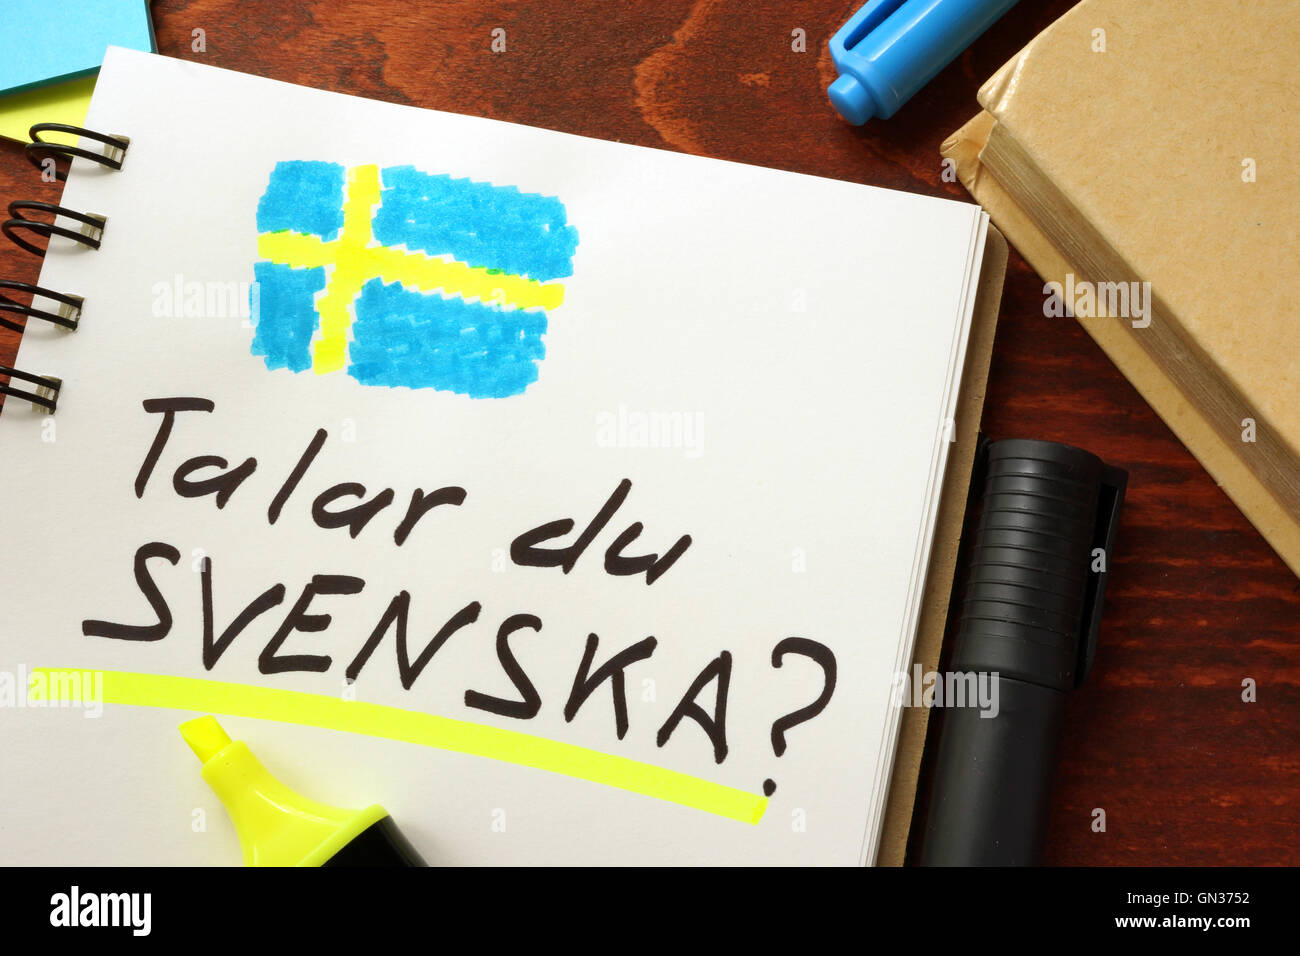 Apprendre le suédois écrit dans un bloc-notes. Concept de l'éducation. Banque D'Images